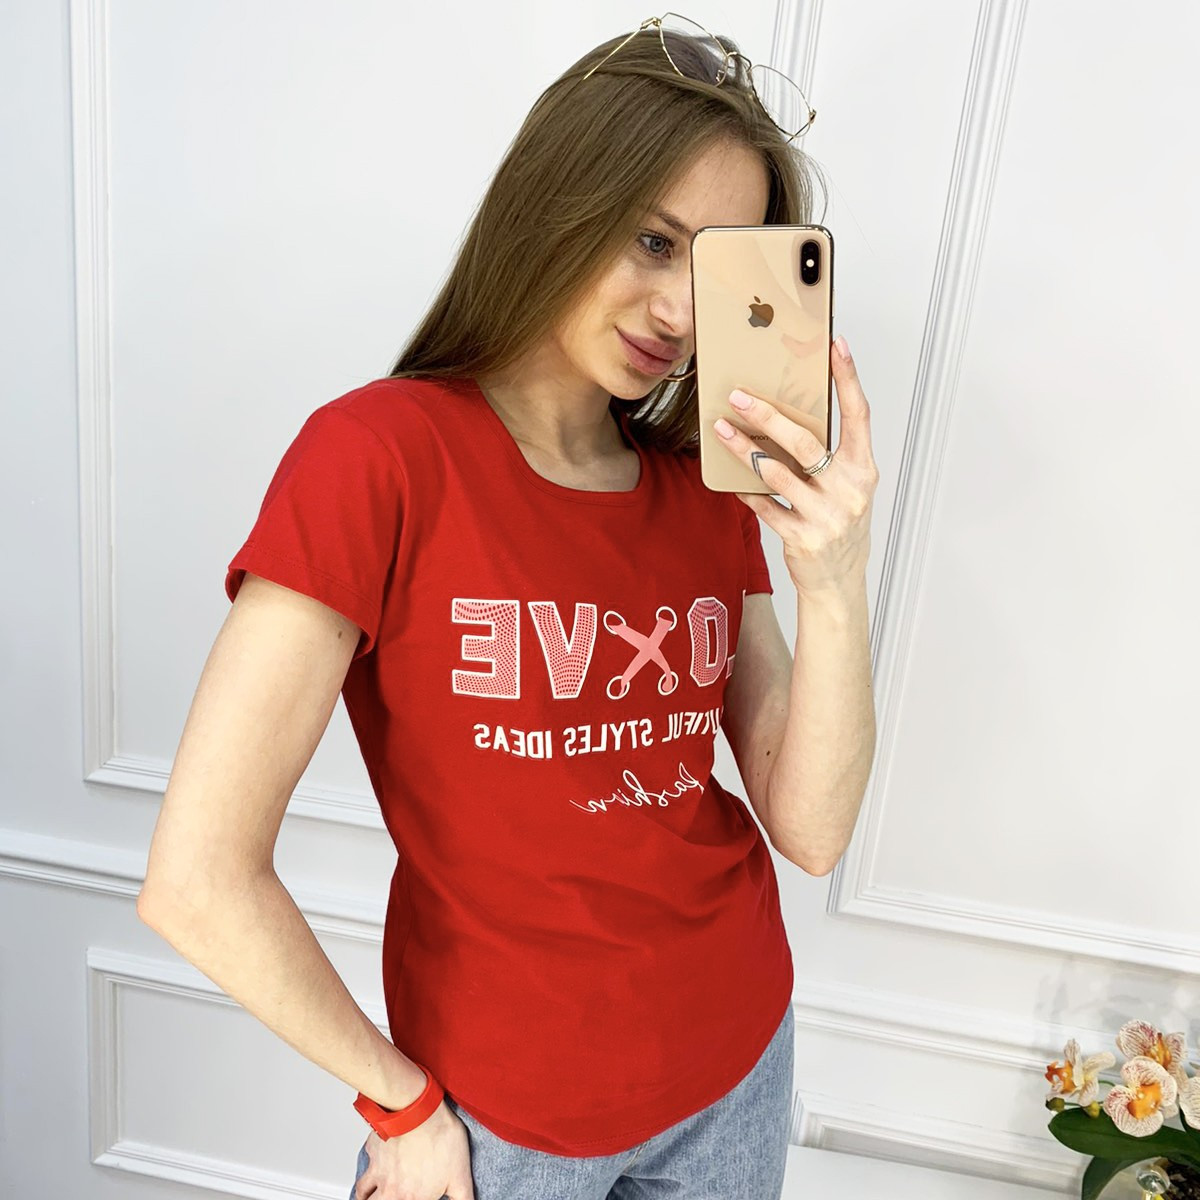 2518-3 Akkaya красная футболка женская с принтом стрейчевая (4 ед. размеры: S.M.L.XL)